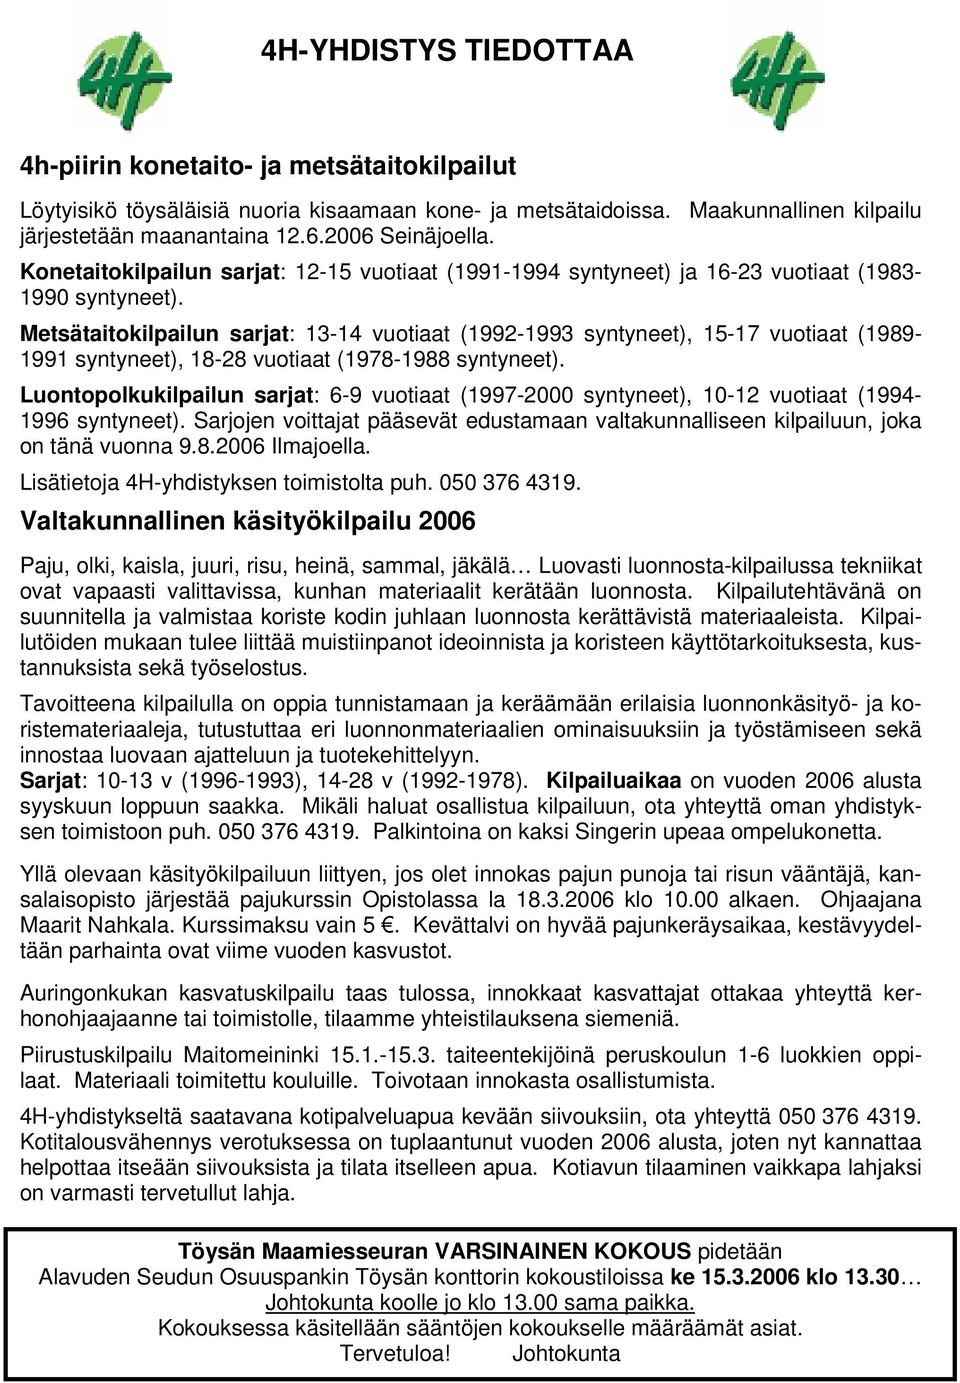 Metsätaitokilpailun sarjat: 13-14 vuotiaat (1992-1993 syntyneet), 15-17 vuotiaat (1989-1991 syntyneet), 18-28 vuotiaat (1978-1988 syntyneet).